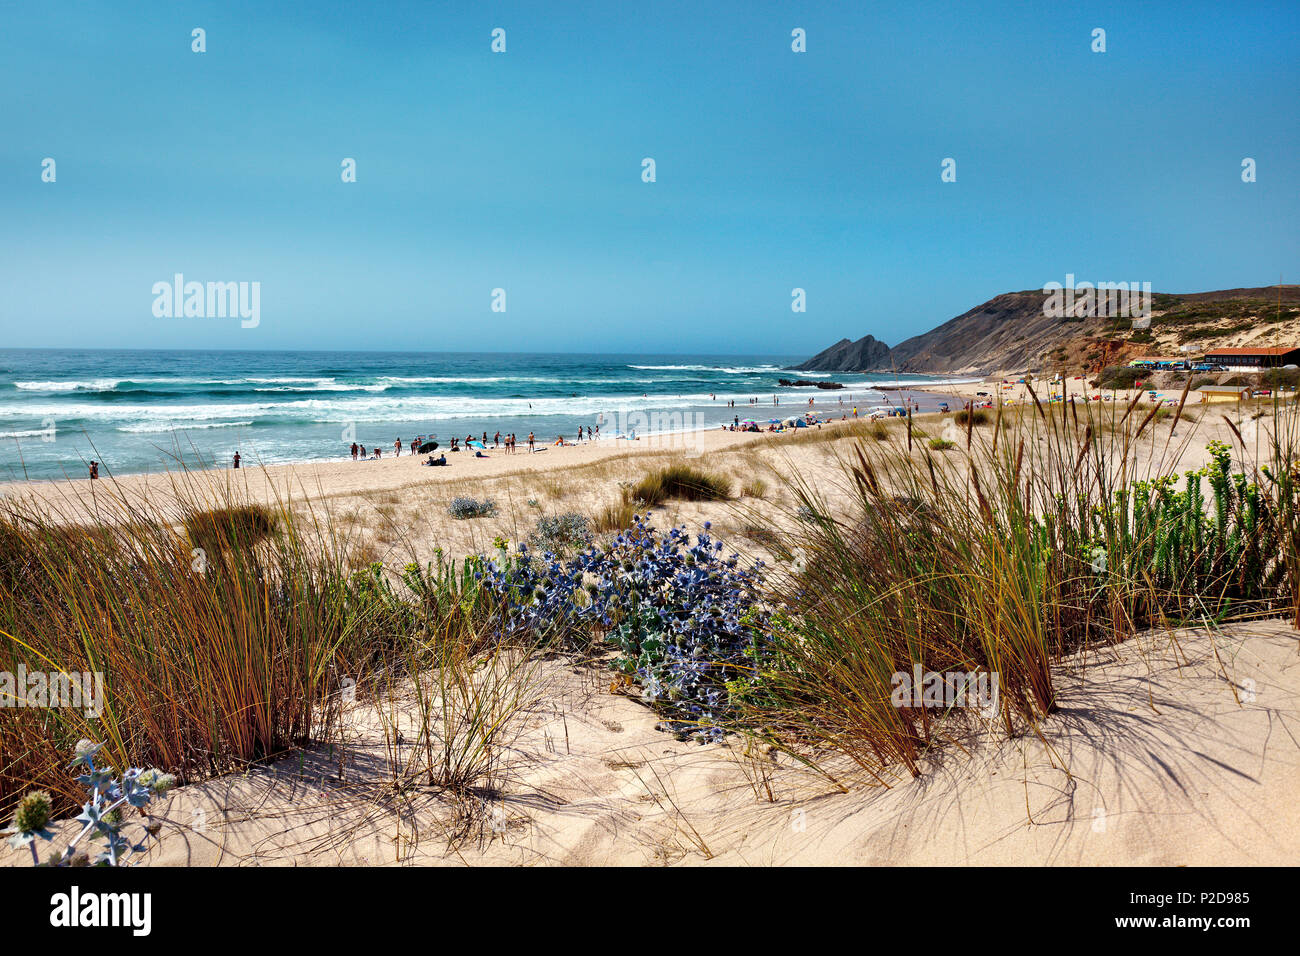 Dunes and beach, Praia da Amoreira, Aljezur, Costa Vicentina, Algarve, Portugal Stock Photo